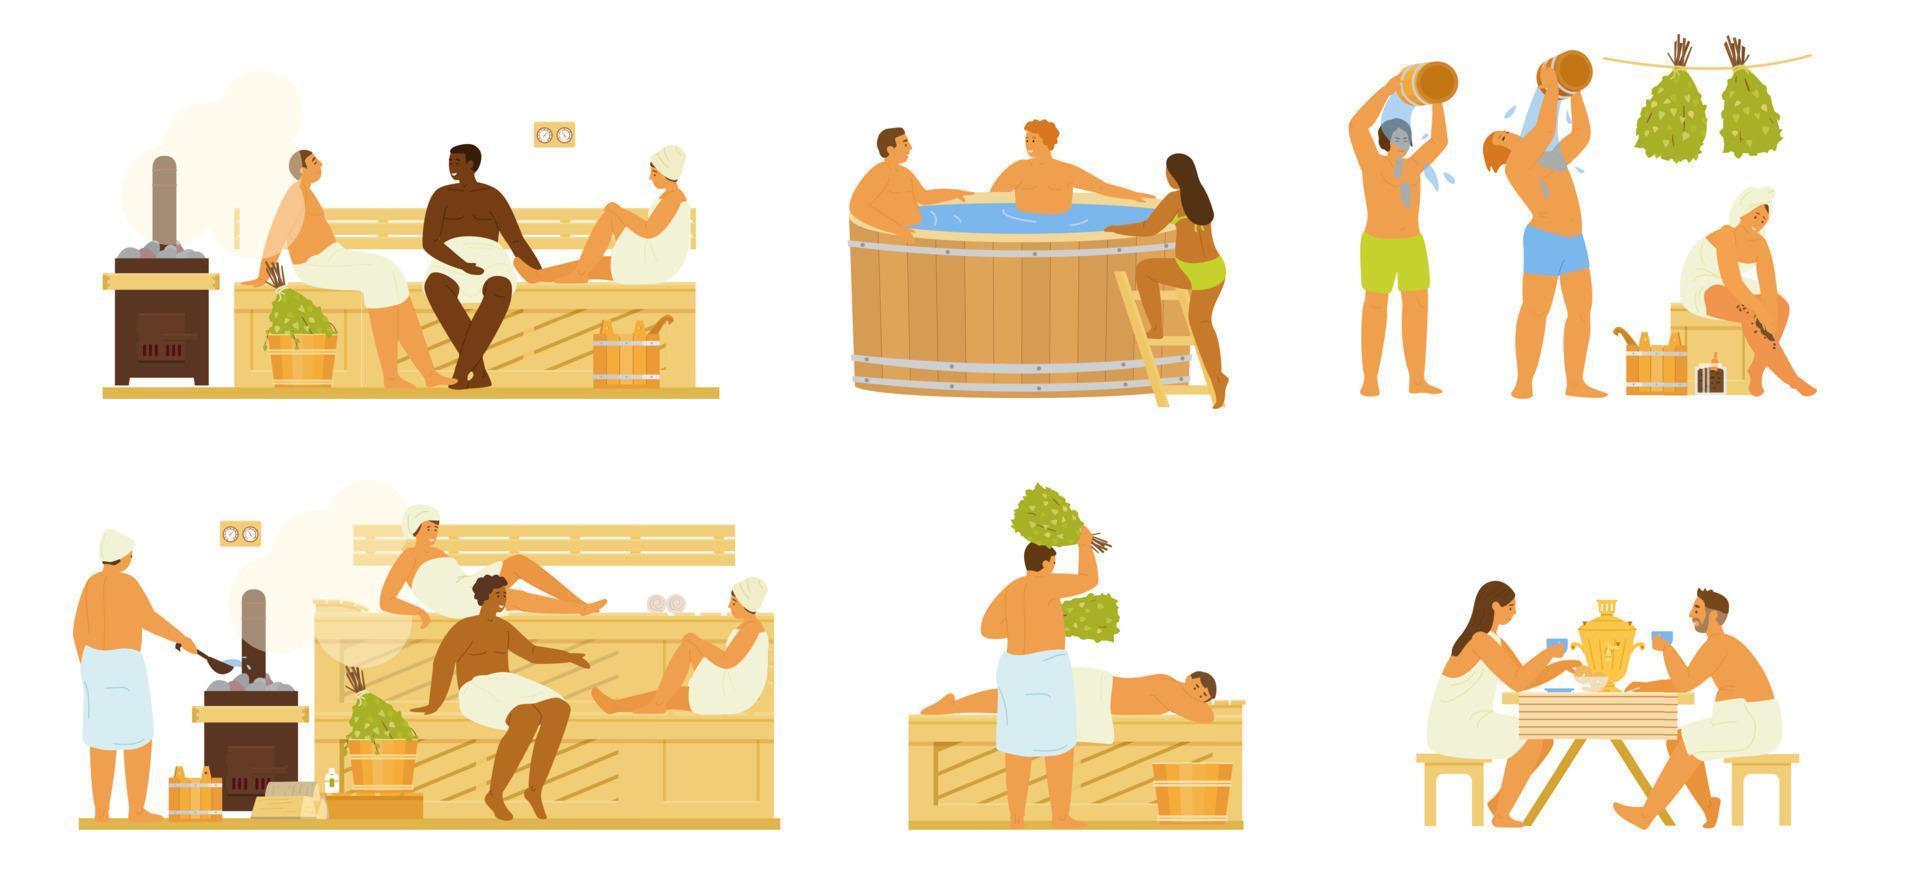 ensemble d'images vectorielles de personnes différentes dans un sauna ou un banya prenant un bain de vapeur, se lavant, arrosant d'eau, buvant du thé de samovar. activité saine. illustration plate. vecteur